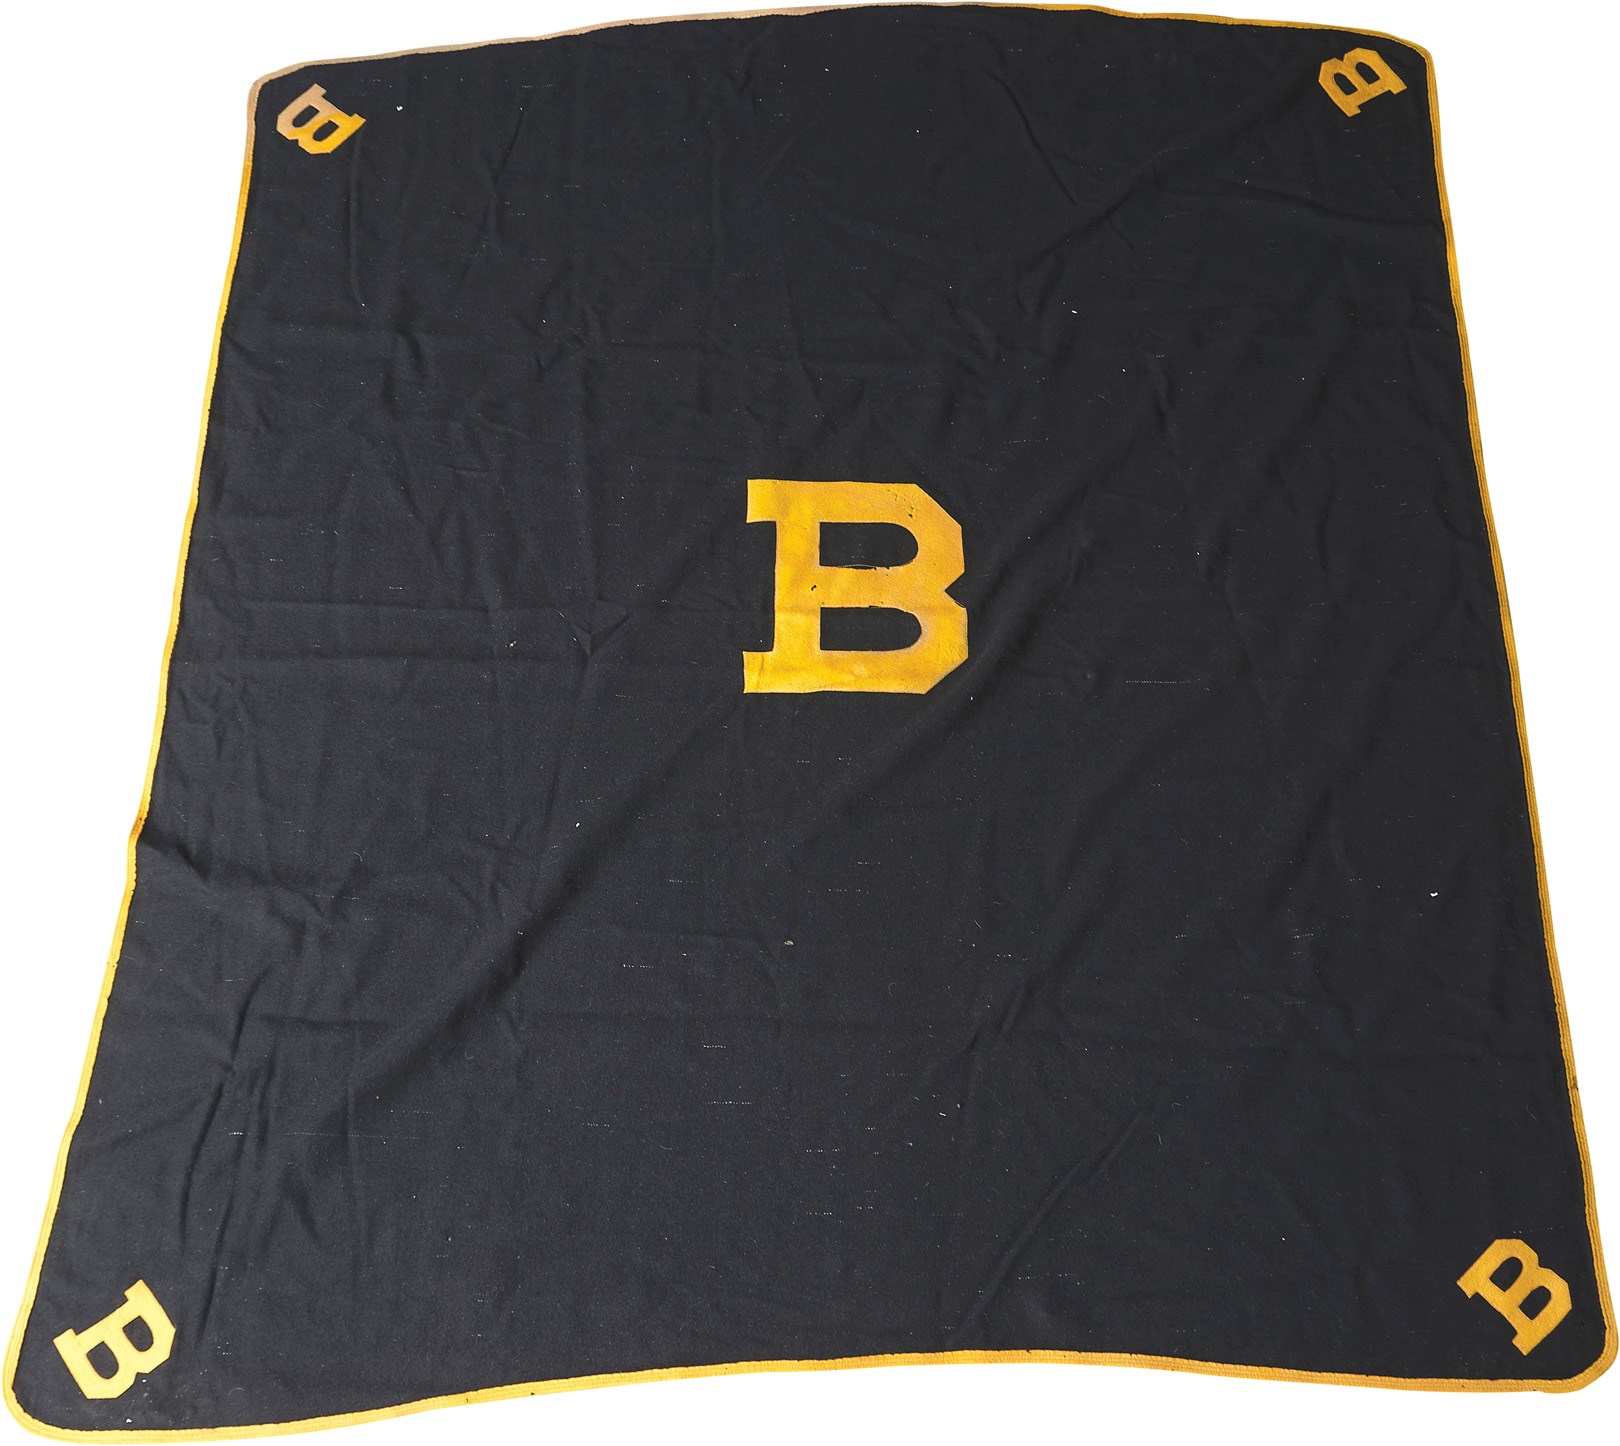 Hockey - 1930s Boston Bruins Blanket Presented to Season Ticket Holders